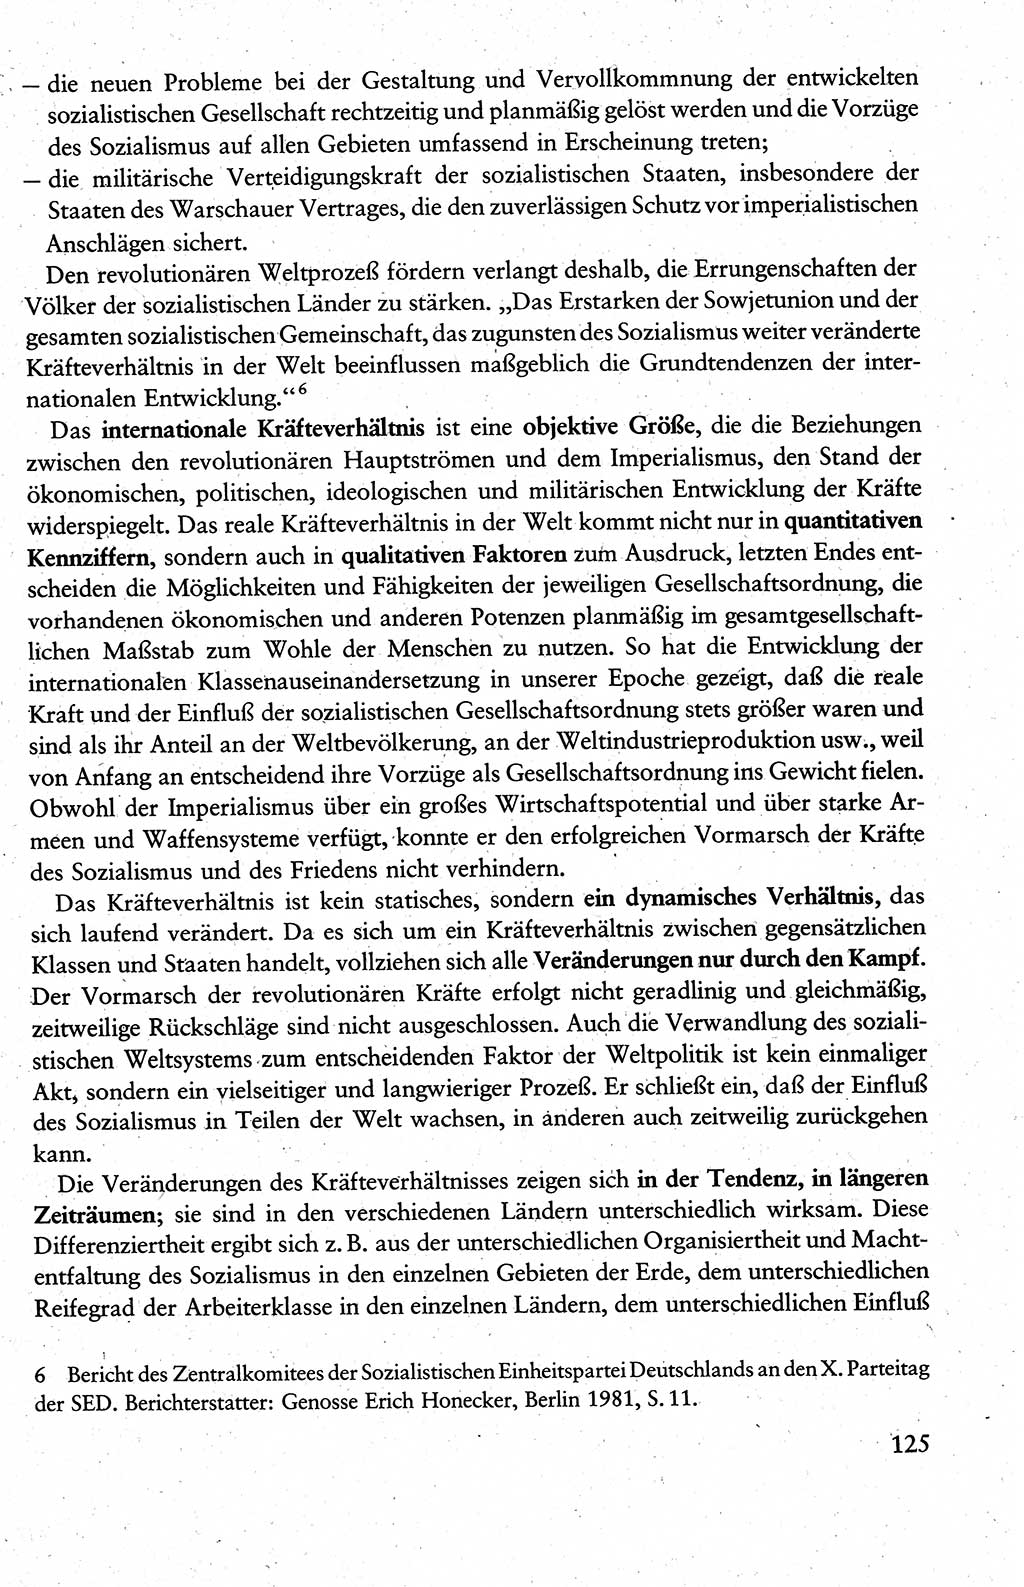 Wissenschaftlicher Kommunismus [Deutsche Demokratische Republik (DDR)], Lehrbuch für das marxistisch-leninistische Grundlagenstudium 1983, Seite 125 (Wiss. Komm. DDR Lb. 1983, S. 125)